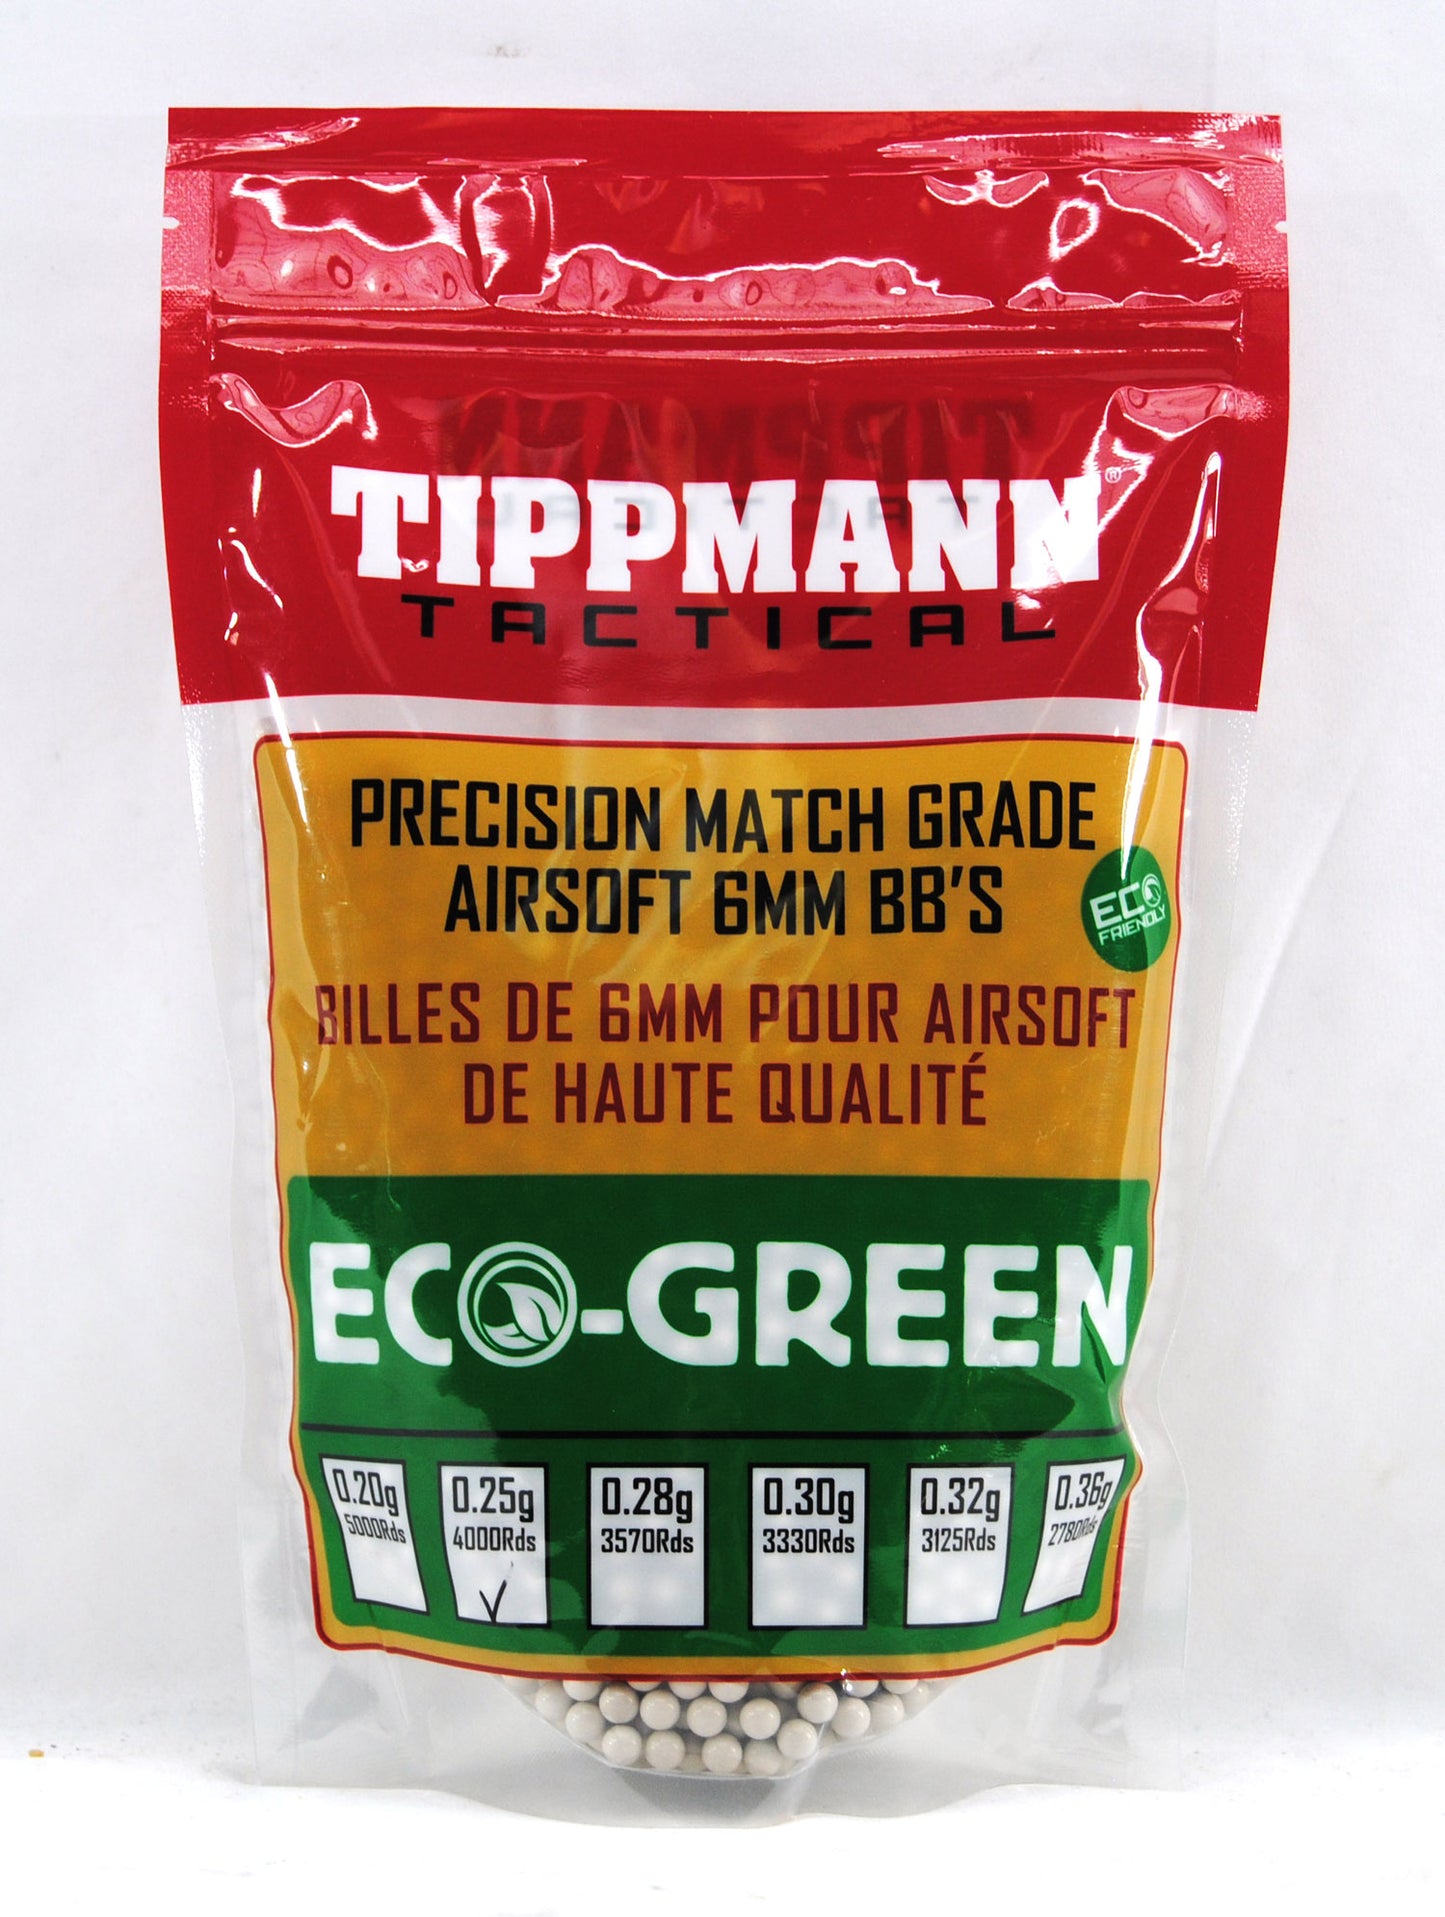 Tippmann Tactical ECO-GREEN 6mm BBs 1kg Bag